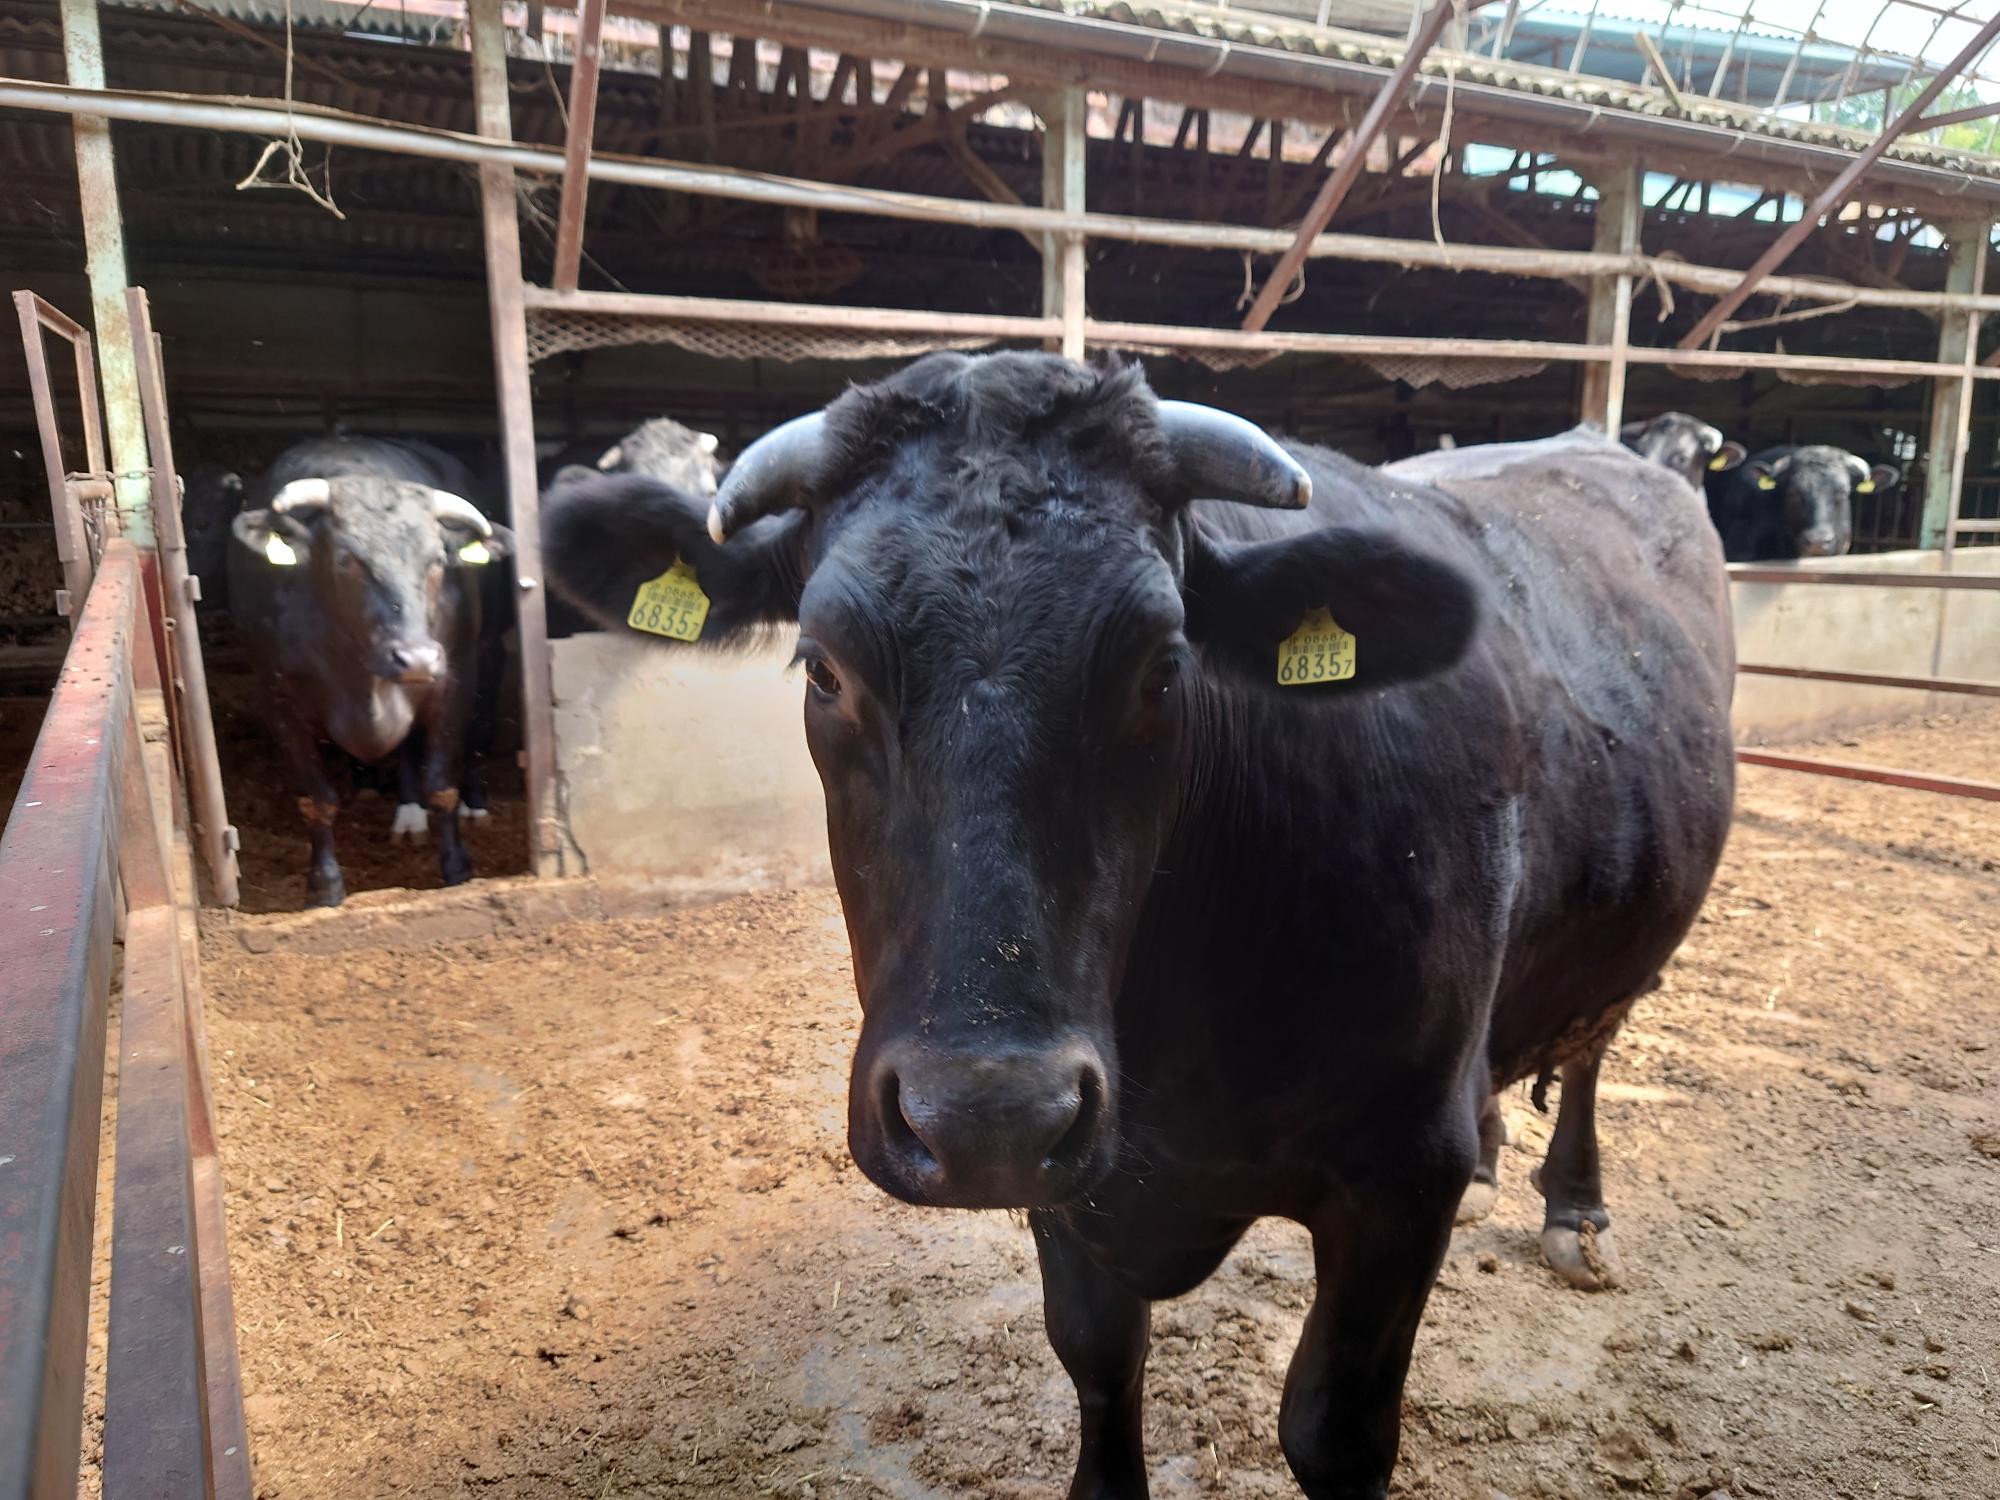 両耳に耳標が付いている黒い牛を正面から写した写真